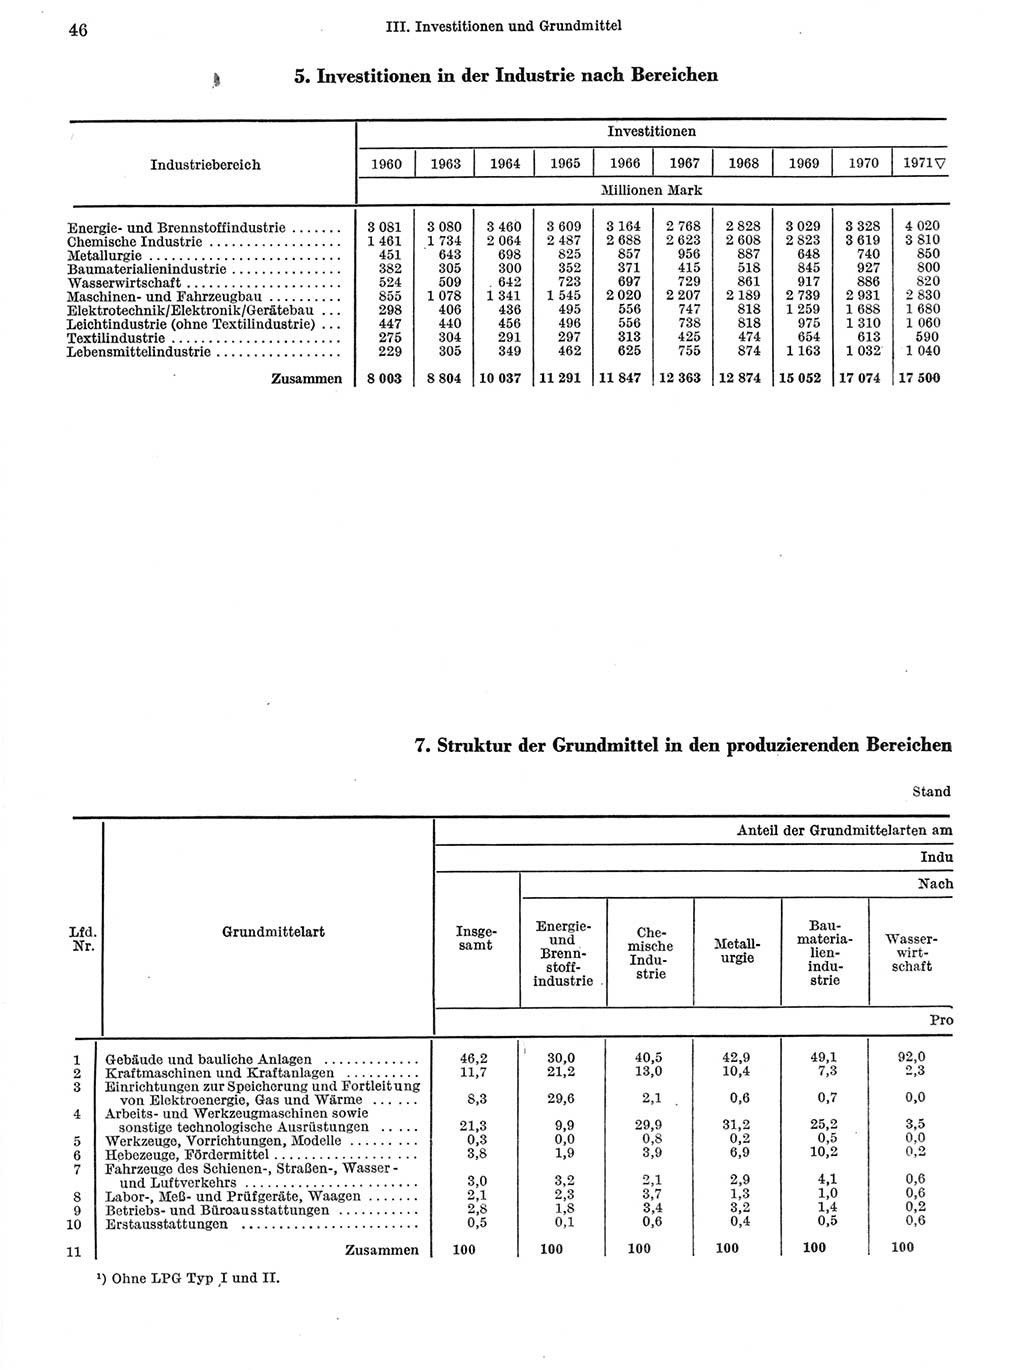 Statistisches Jahrbuch der Deutschen Demokratischen Republik (DDR) 1972, Seite 46 (Stat. Jb. DDR 1972, S. 46)